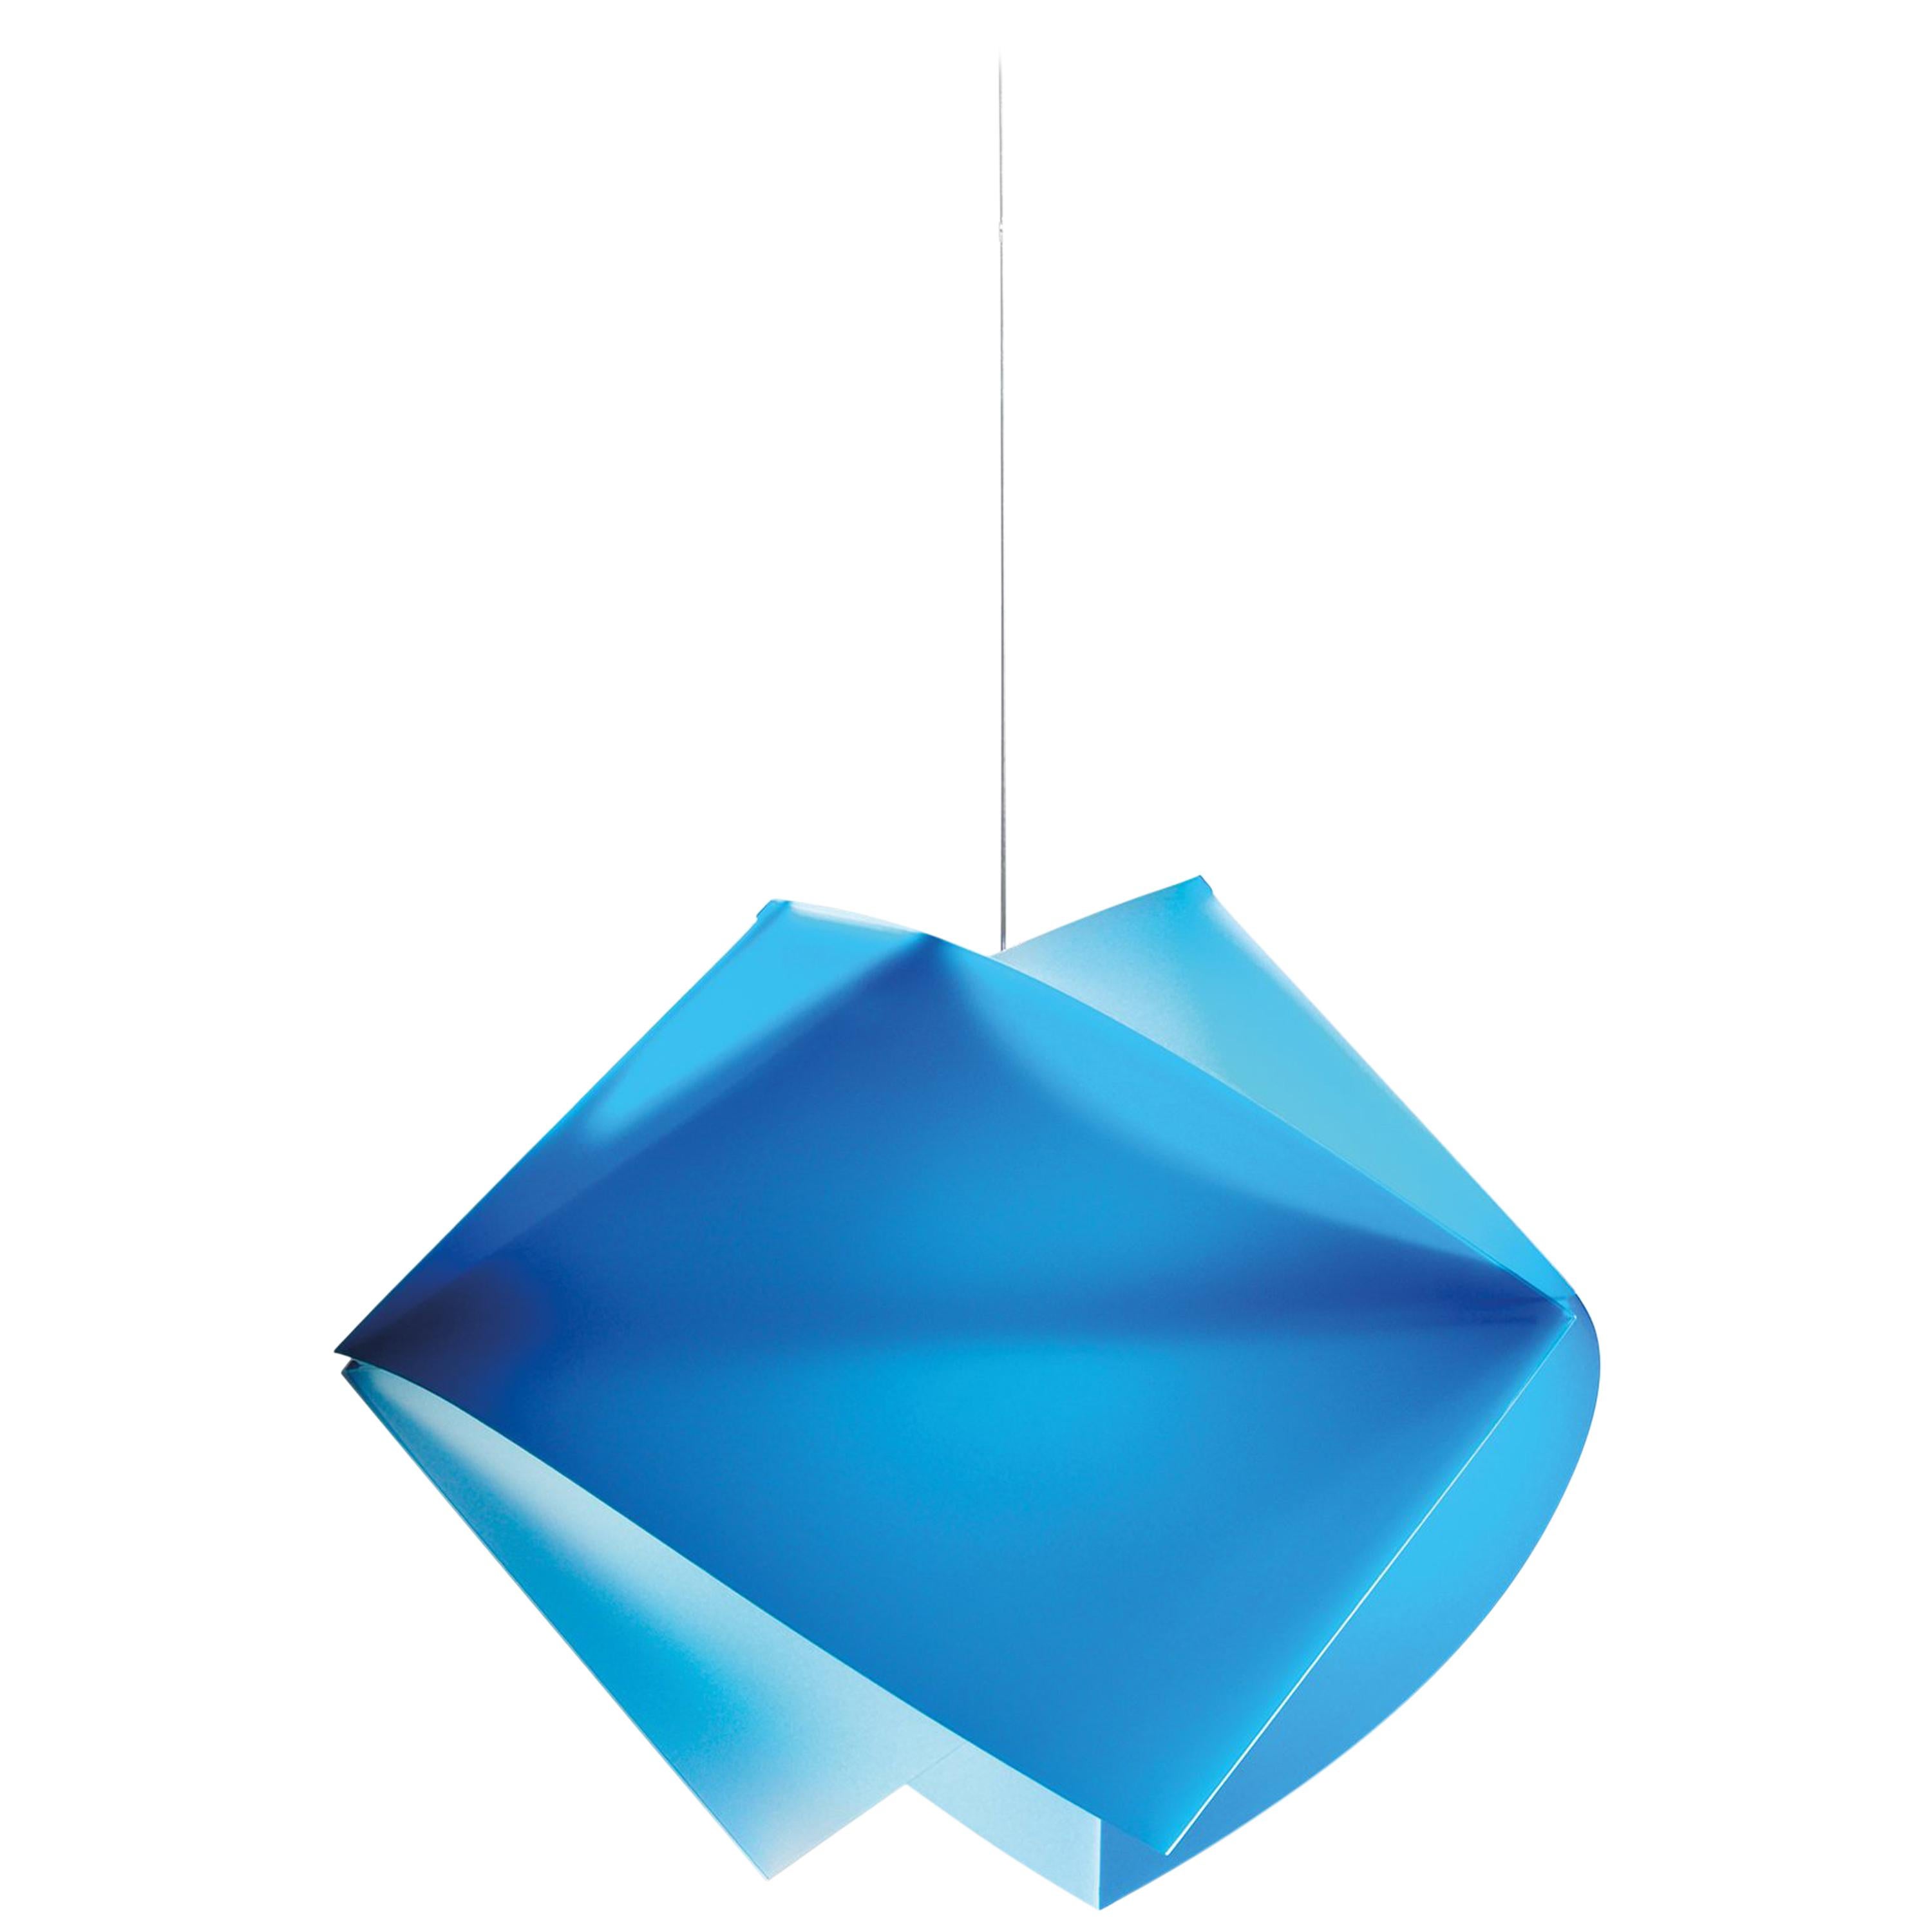 SLAMP Gemmy Pendant Light in Blue by Spalletta, Croce, Ragnisco & Wijffels